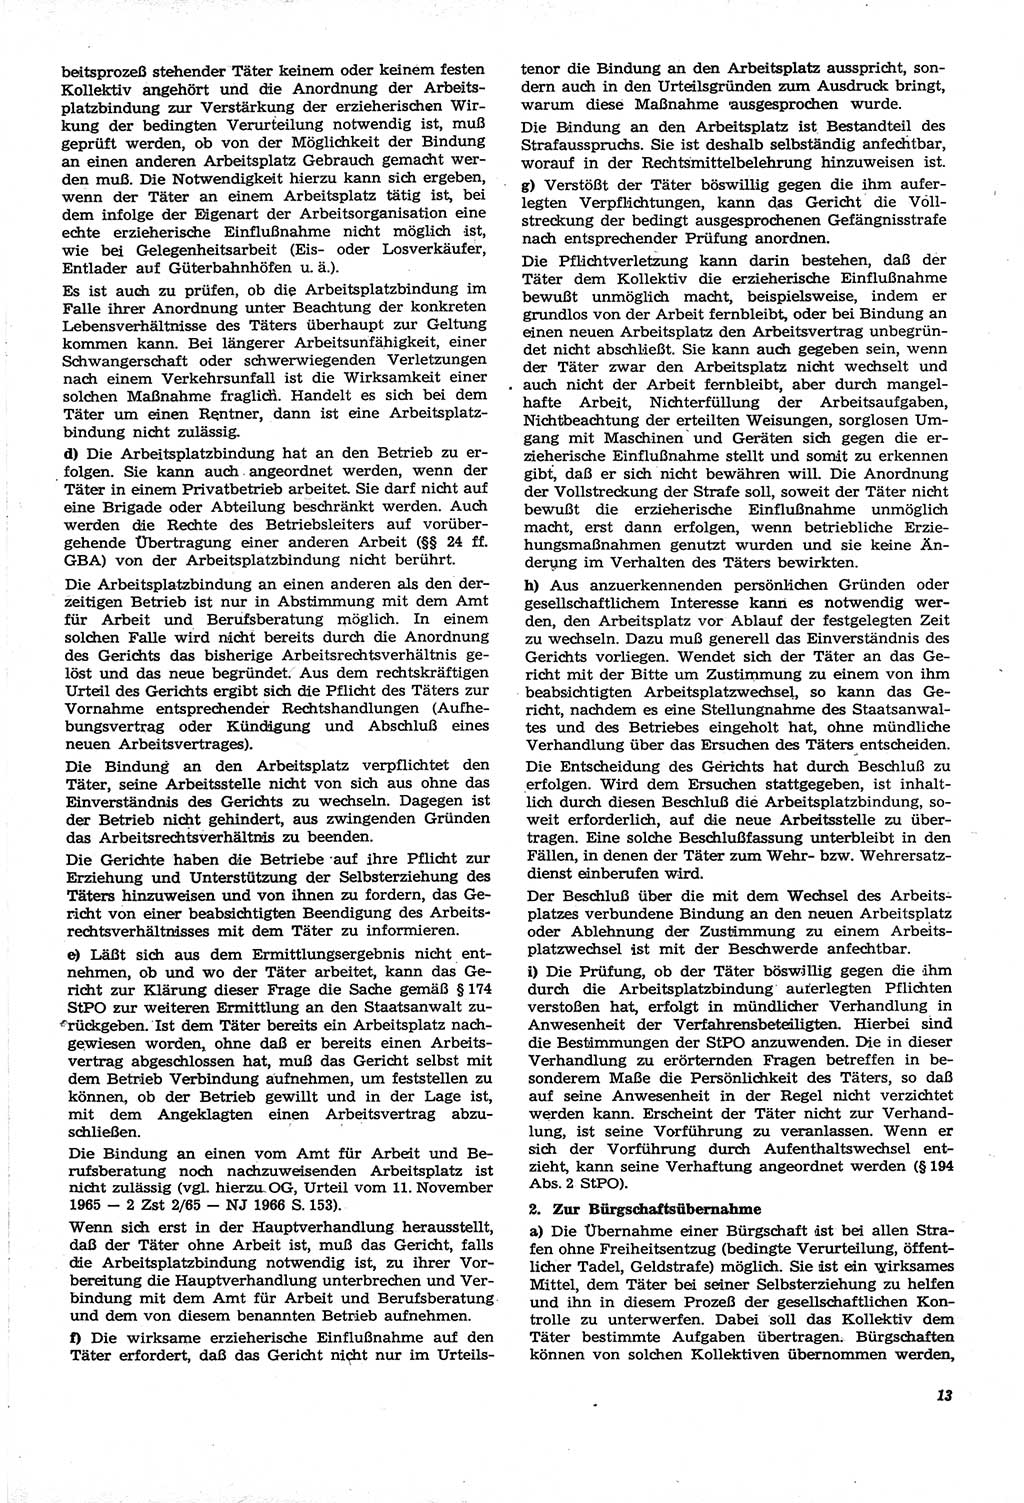 Neue Justiz (NJ), Zeitschrift für Recht und Rechtswissenschaft [Deutsche Demokratische Republik (DDR)], 21. Jahrgang 1967, Seite 13 (NJ DDR 1967, S. 13)